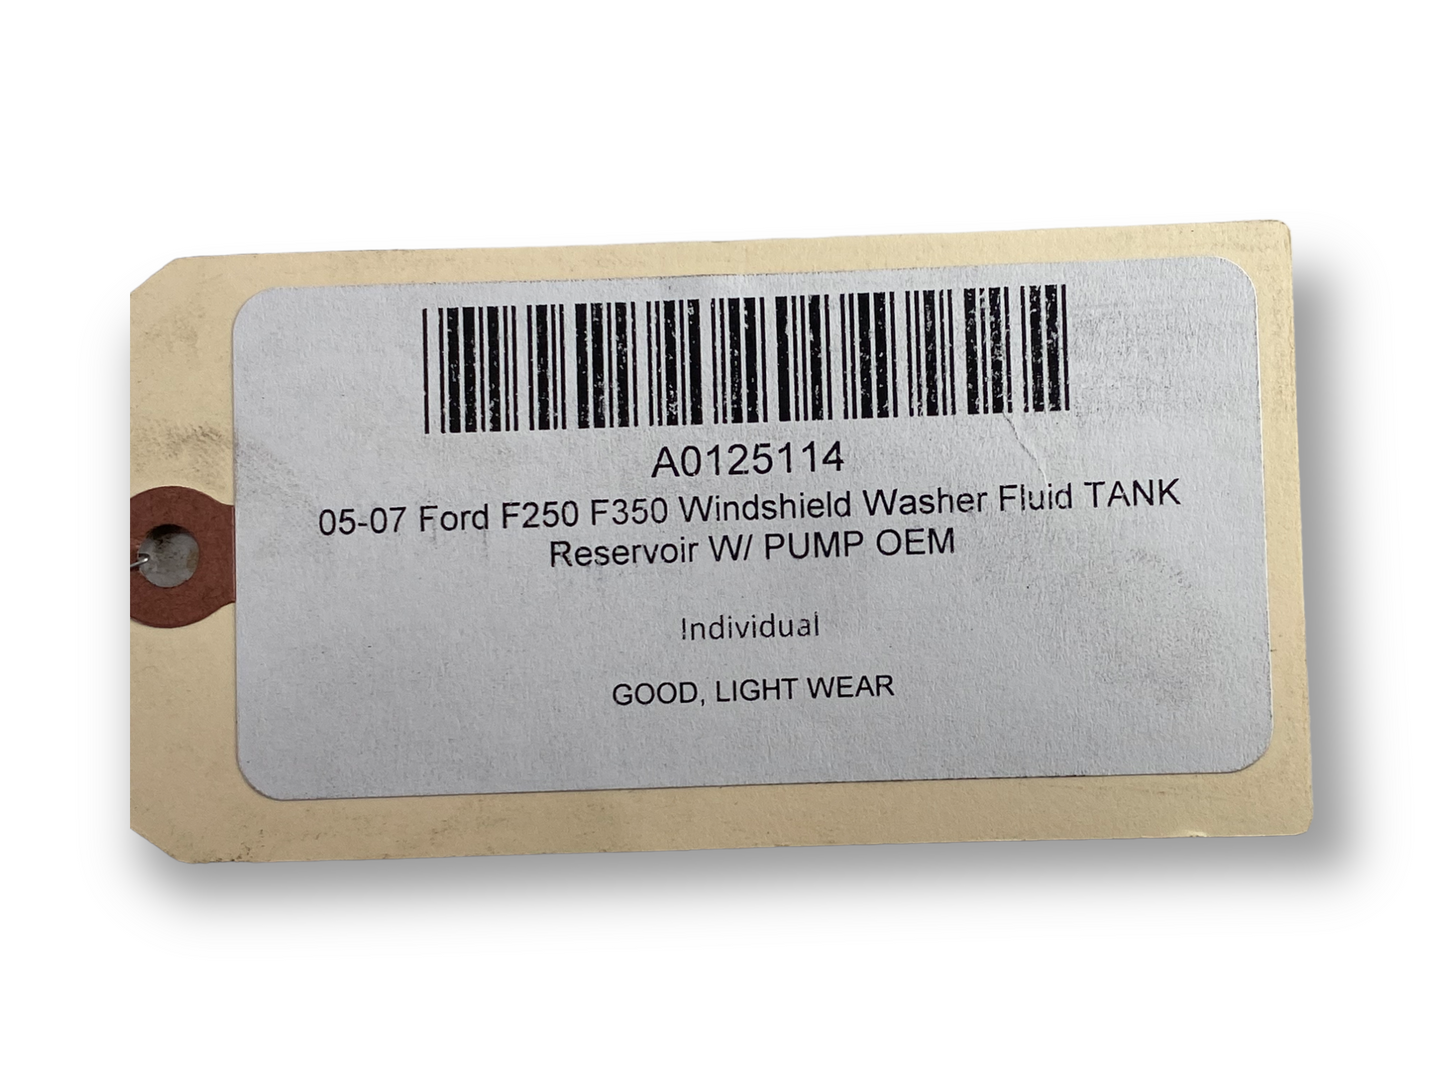 05-07 Ford F250 F350 Windshield Washer Fluid Tank Reservoir W/ Pump OEM